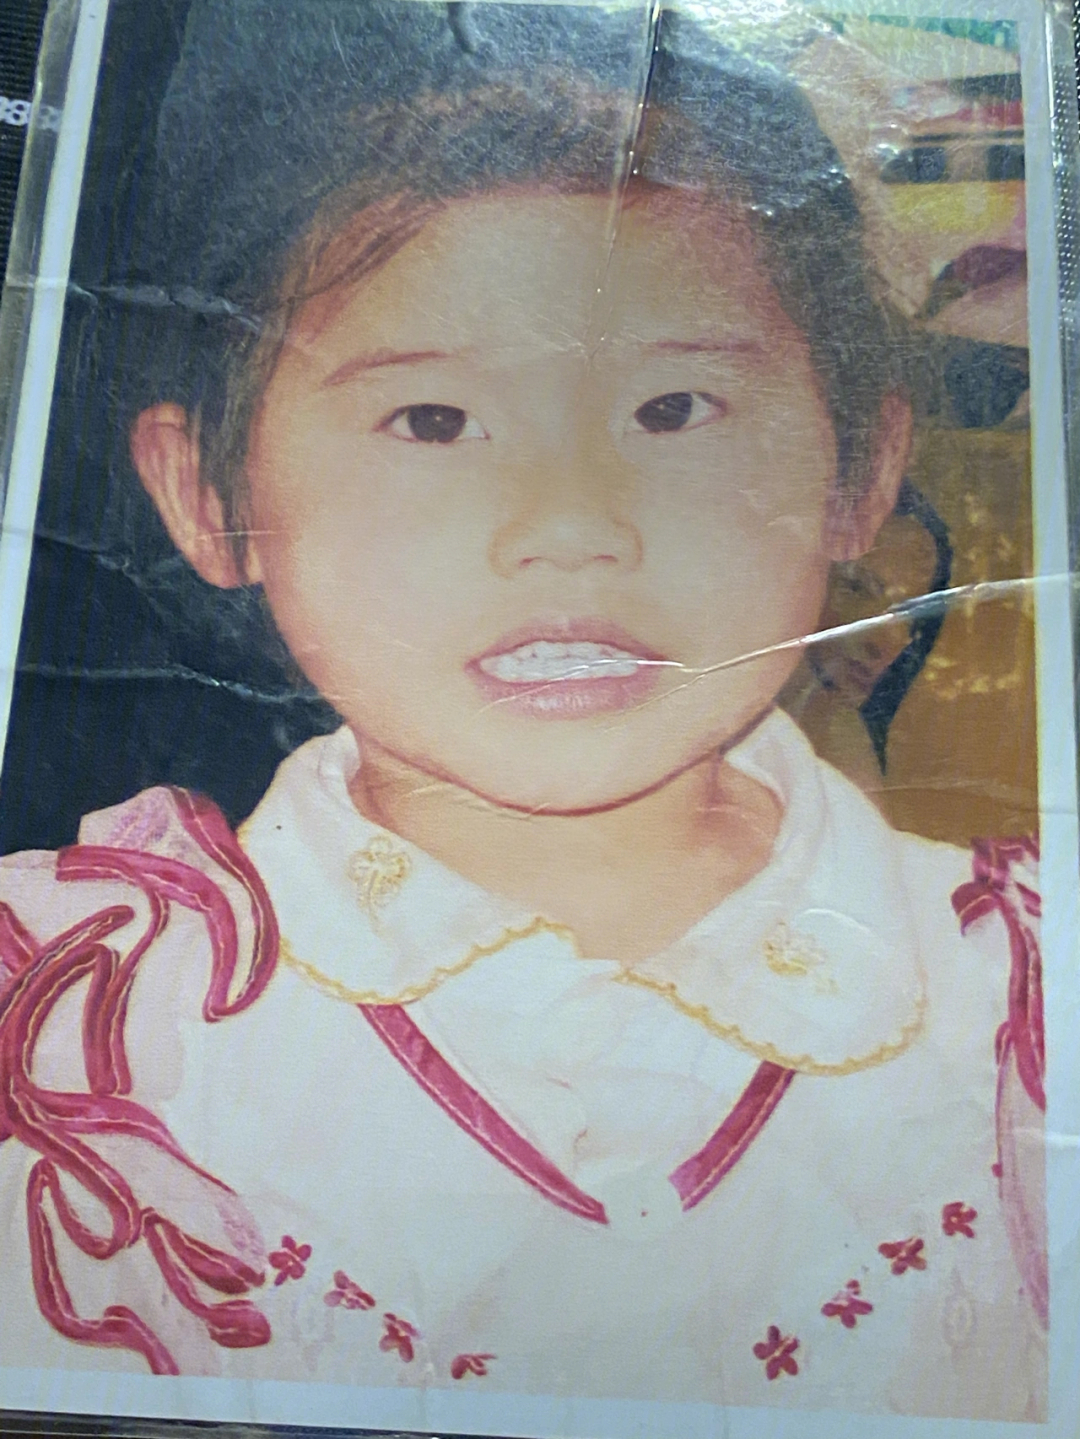 茅惠芳小时候照片图片